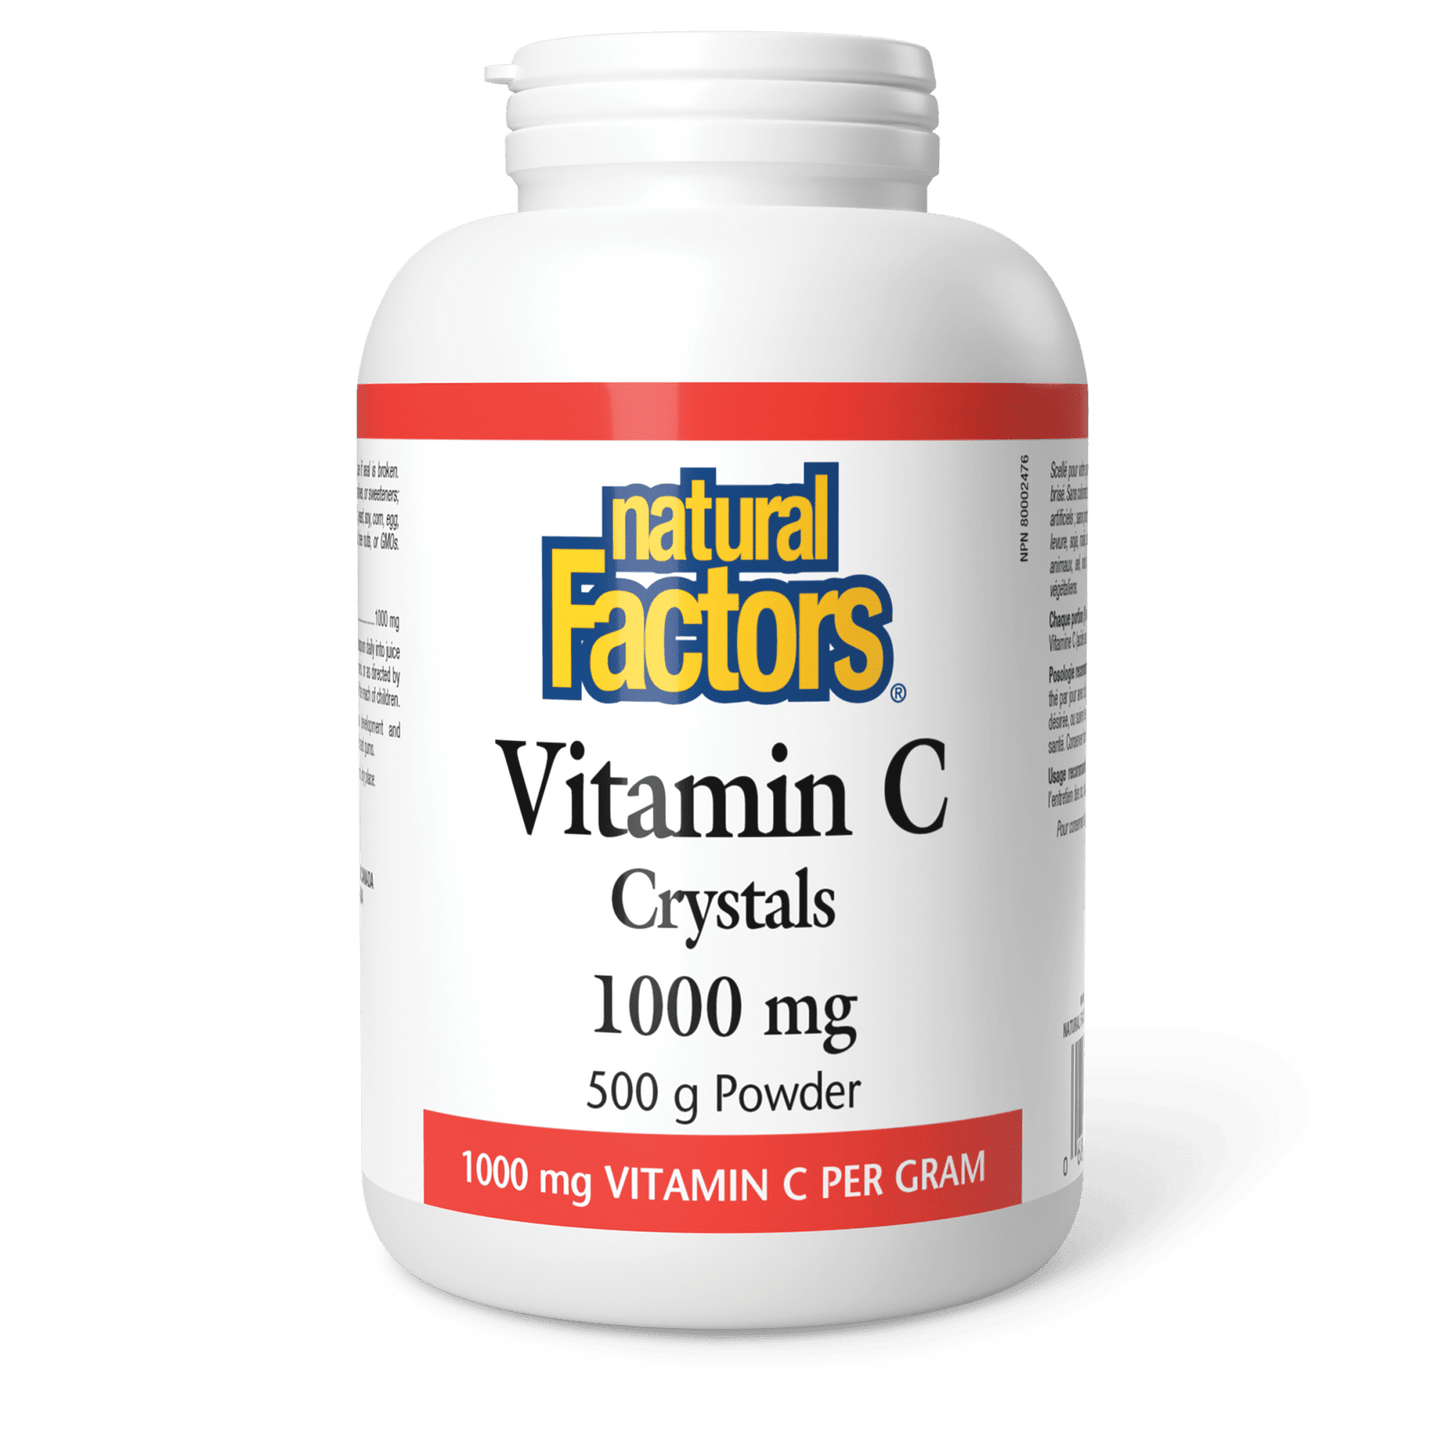 Vitamin C Crystals 1000 mg, Natural Factors|v|image|1362